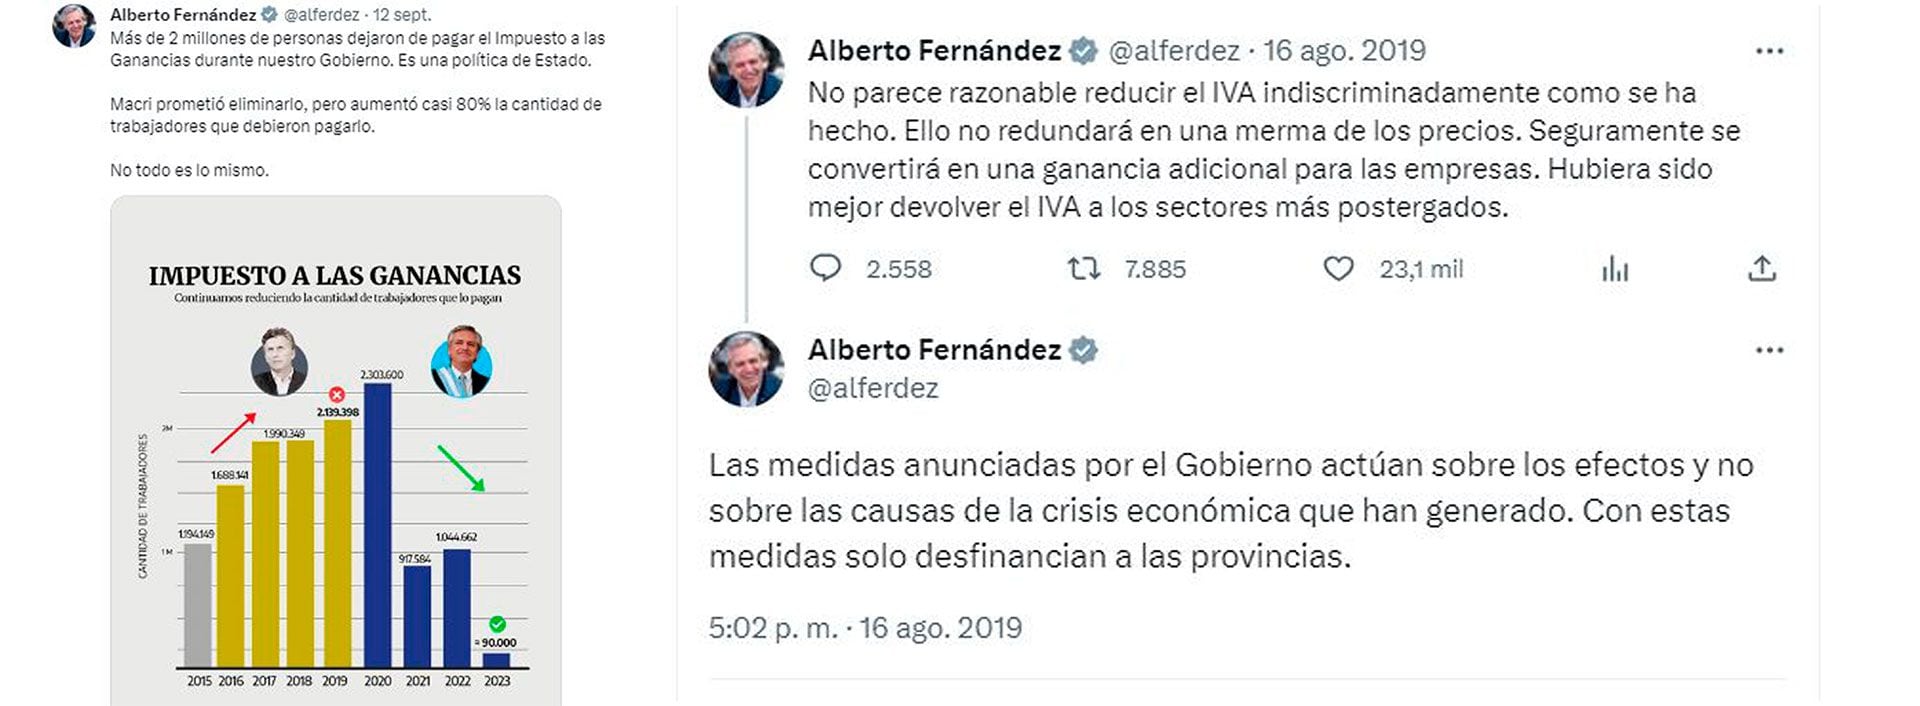 Los tuits de Alberto Fernández ahora y en 2019